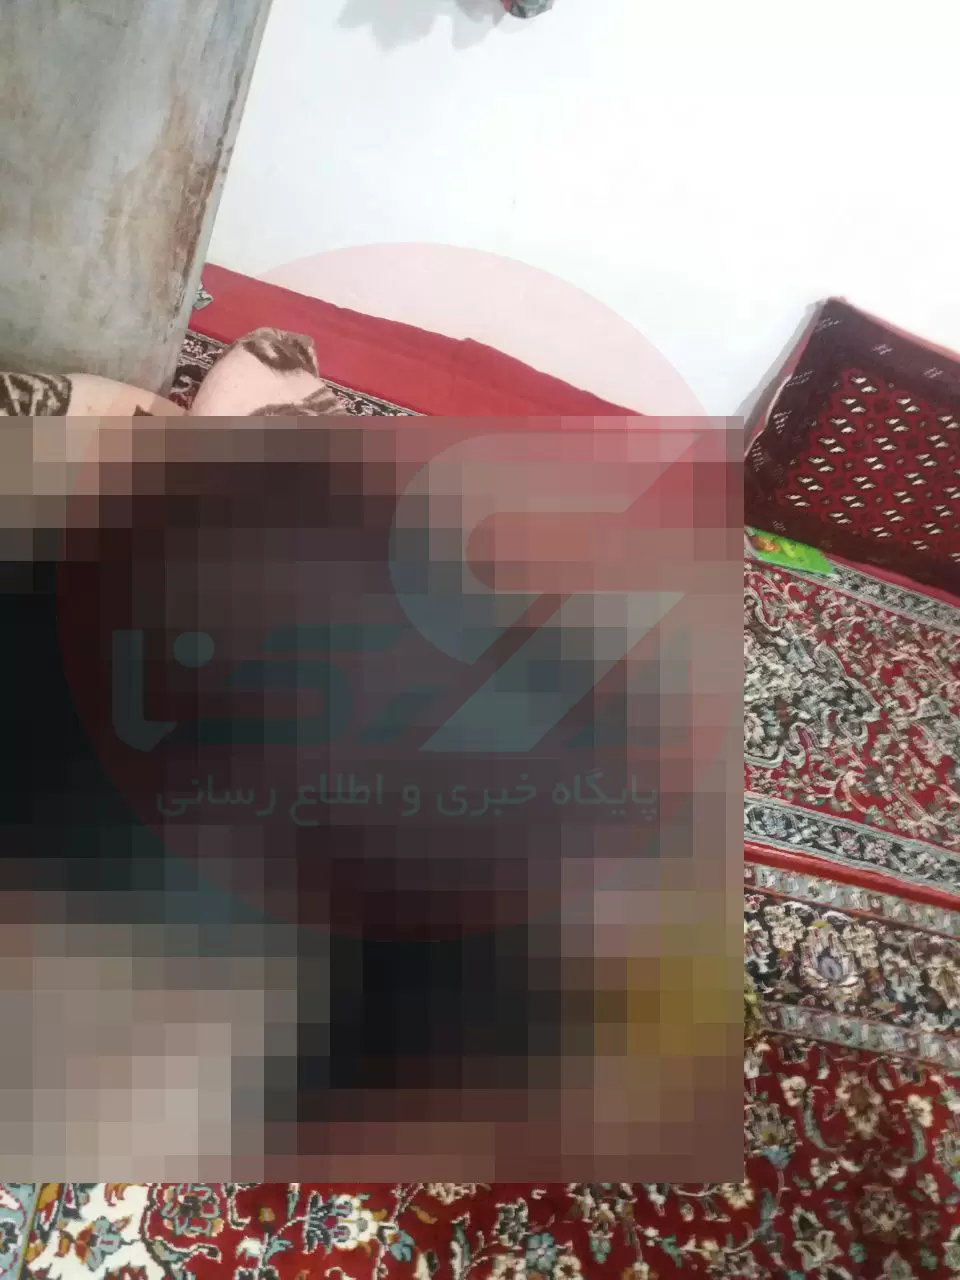 پدر یک خانواده در شهرستان هرسین از توابع استان کرمانشاه، پنج عضو خانواده خود را به قتل رساند.